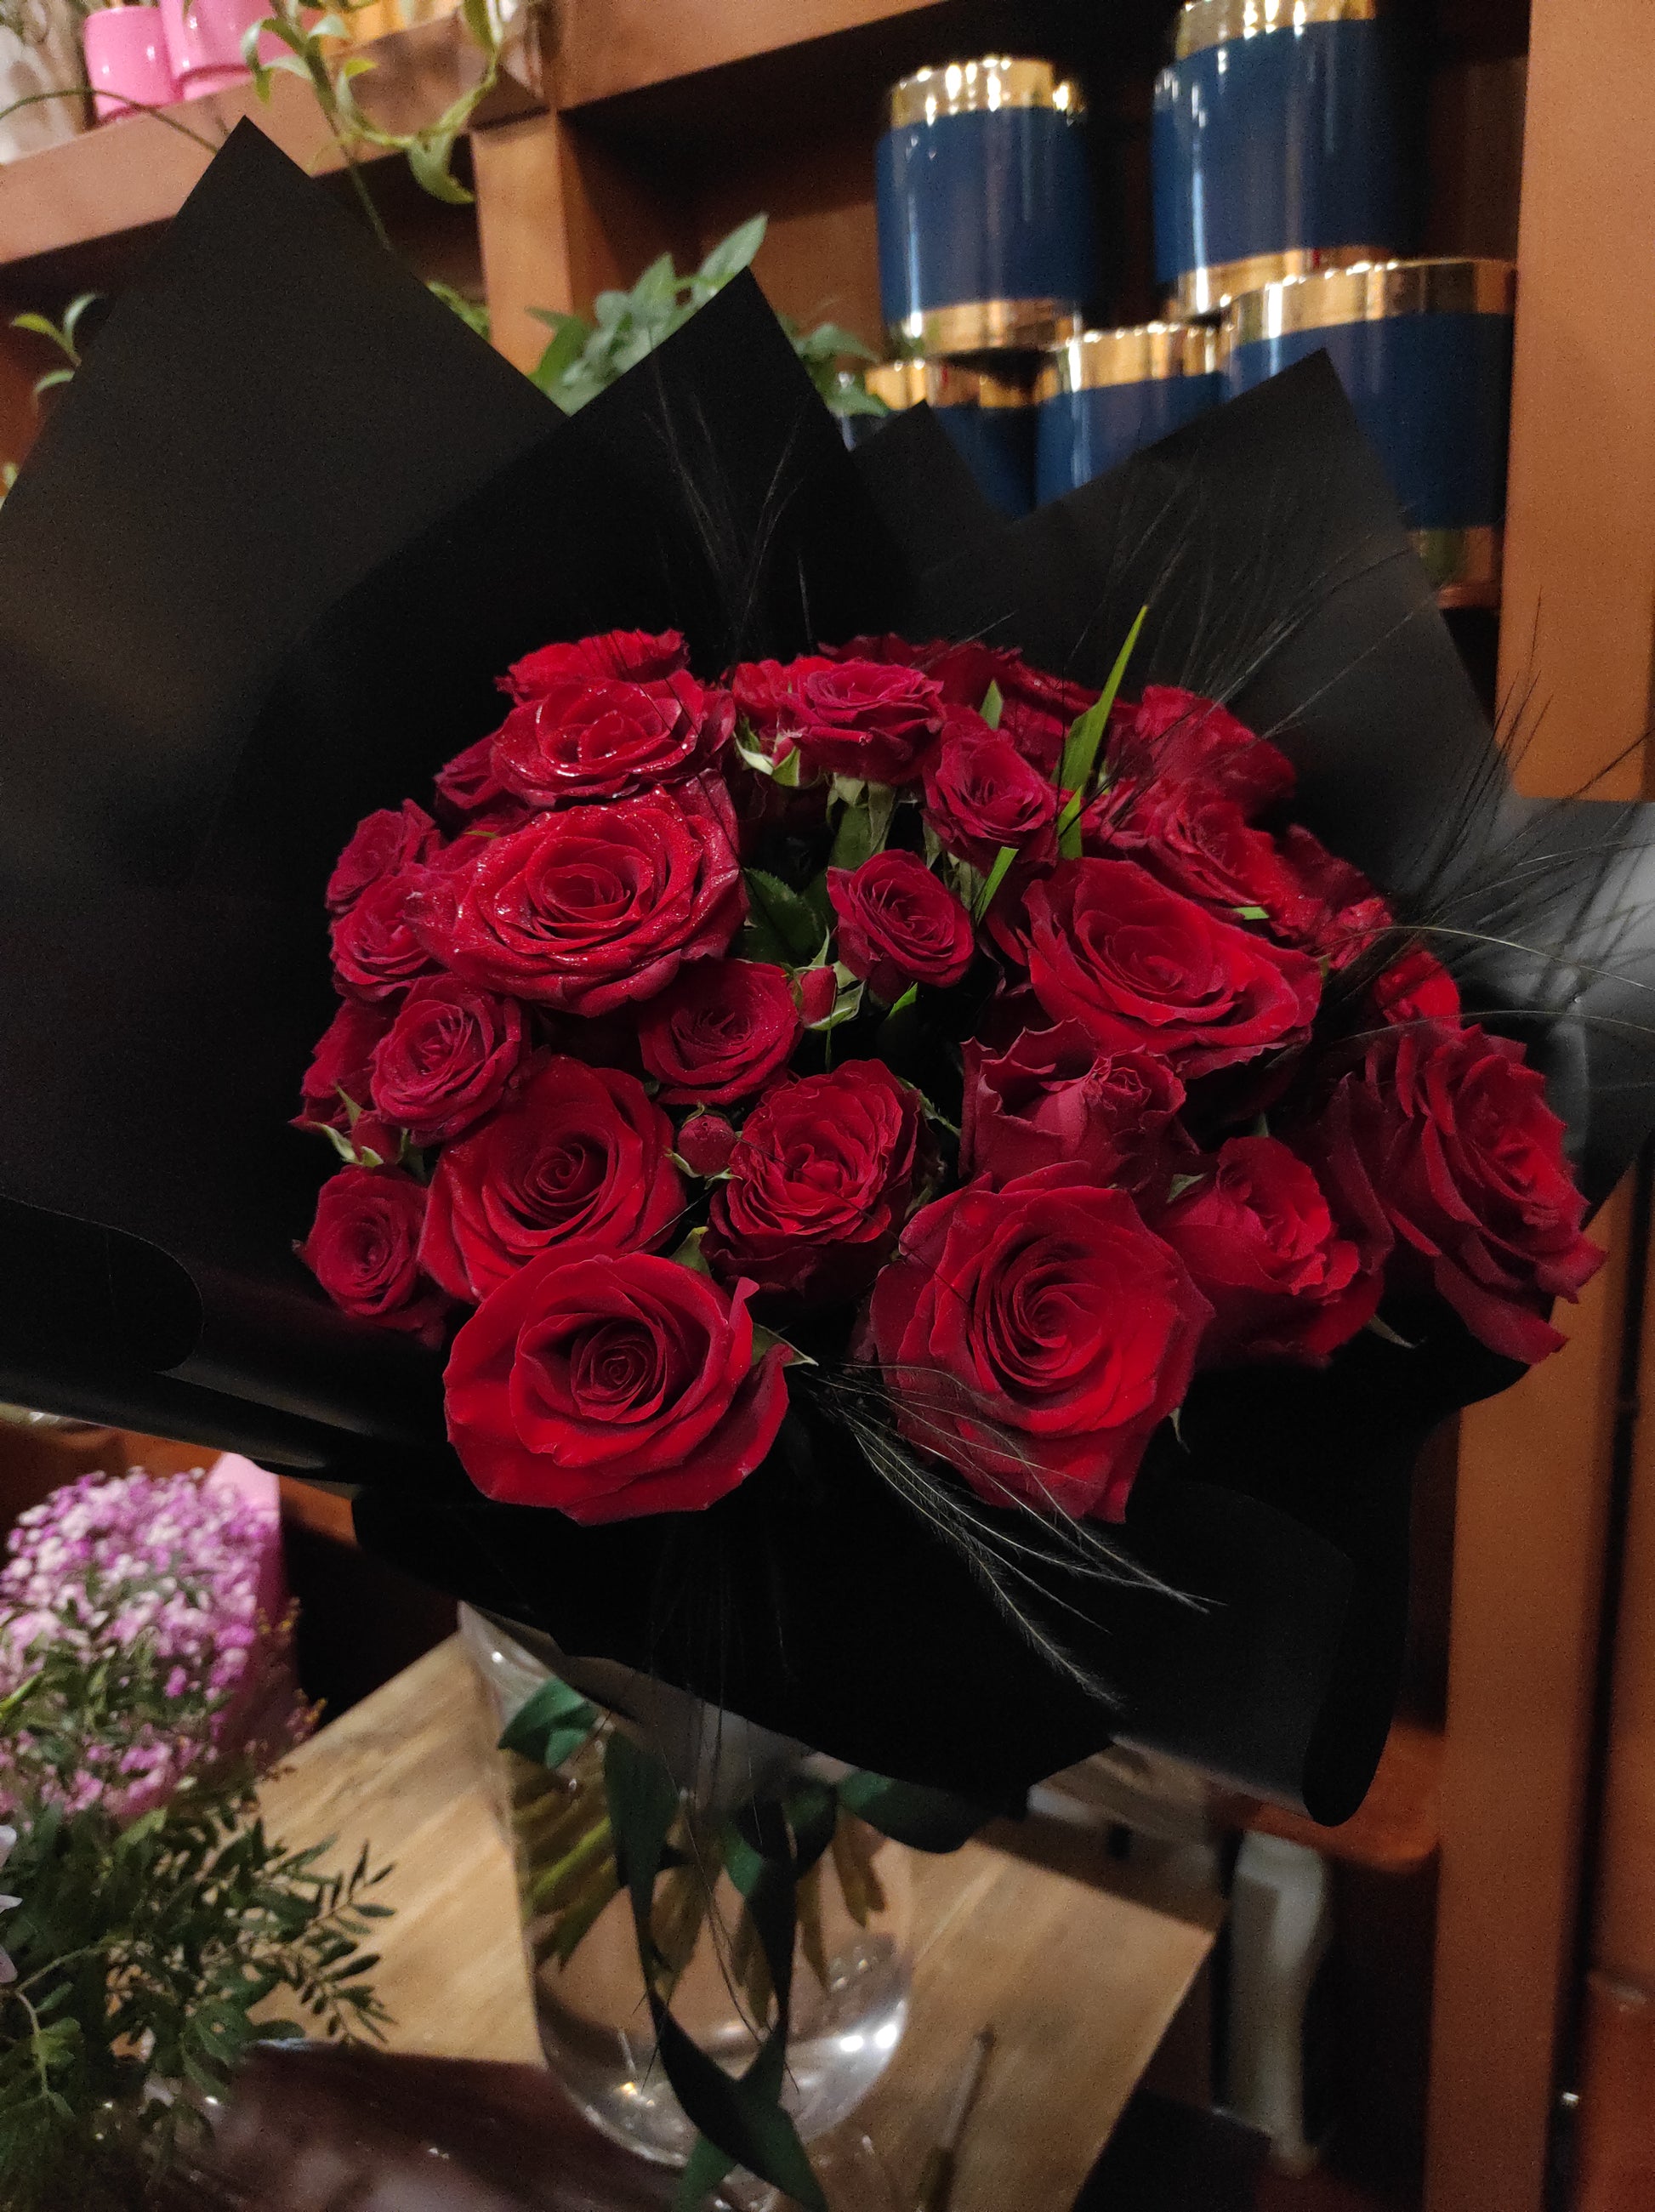 Raudonos rožės su juodu įpakavimu - Gėlių pristatymas. Inesa Borkovska